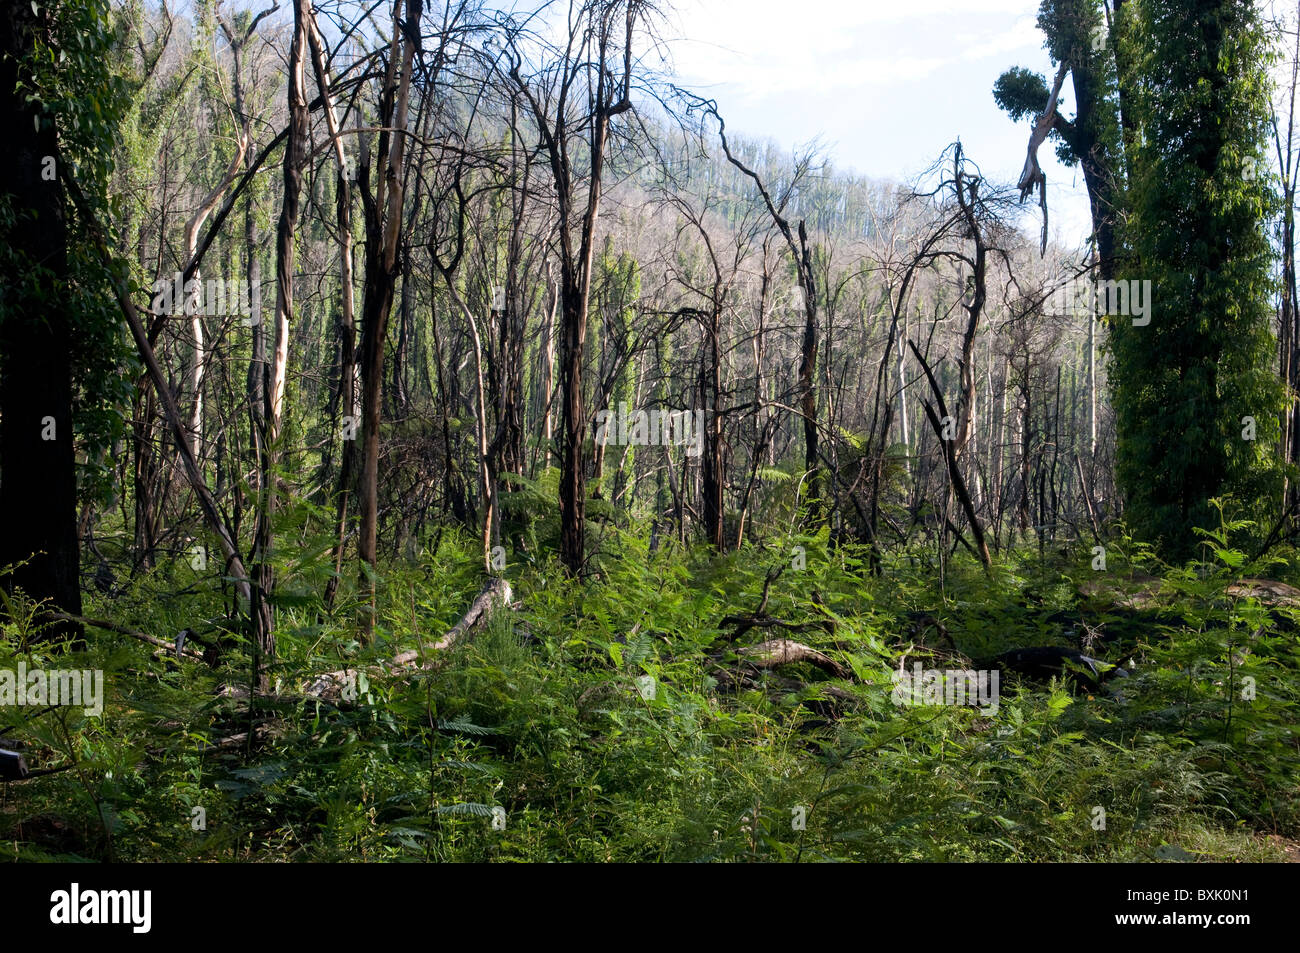 Fire árboles dañados y bush mostrando el regrowth un año después un dichas quemas Foto de stock